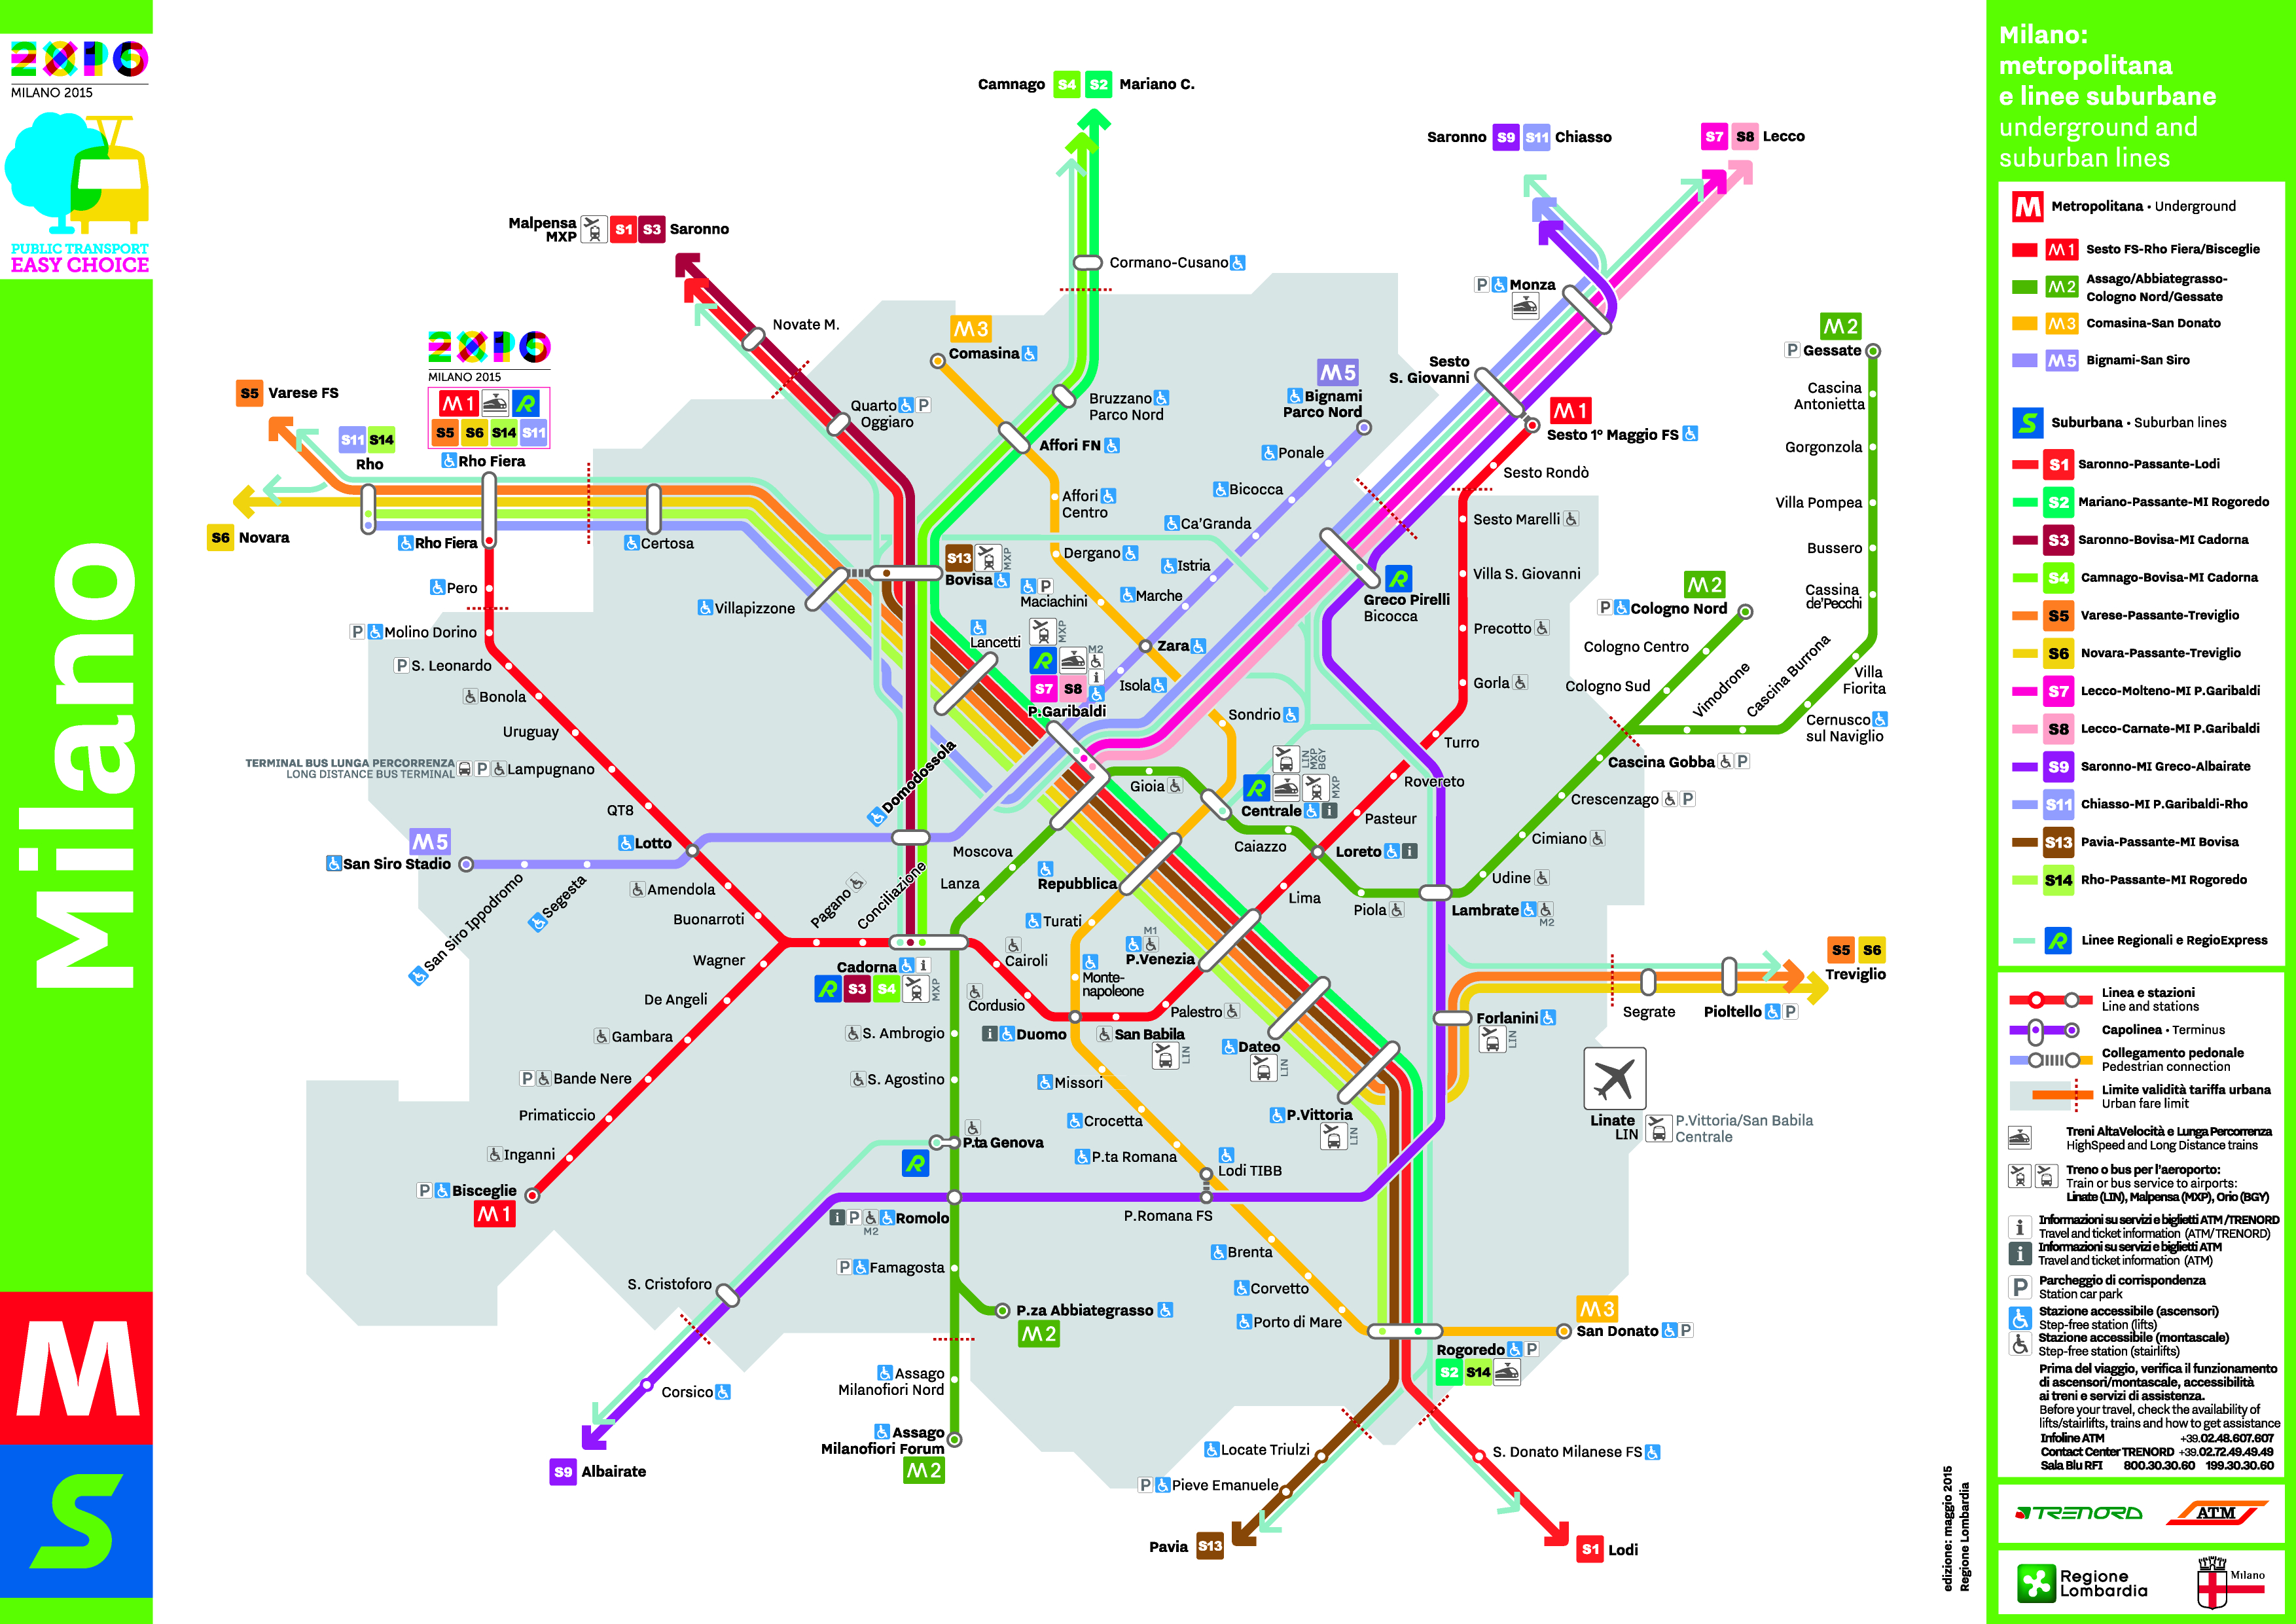 Mappa metro di Milano, linee rossa, lilla, verde e gialla, guida